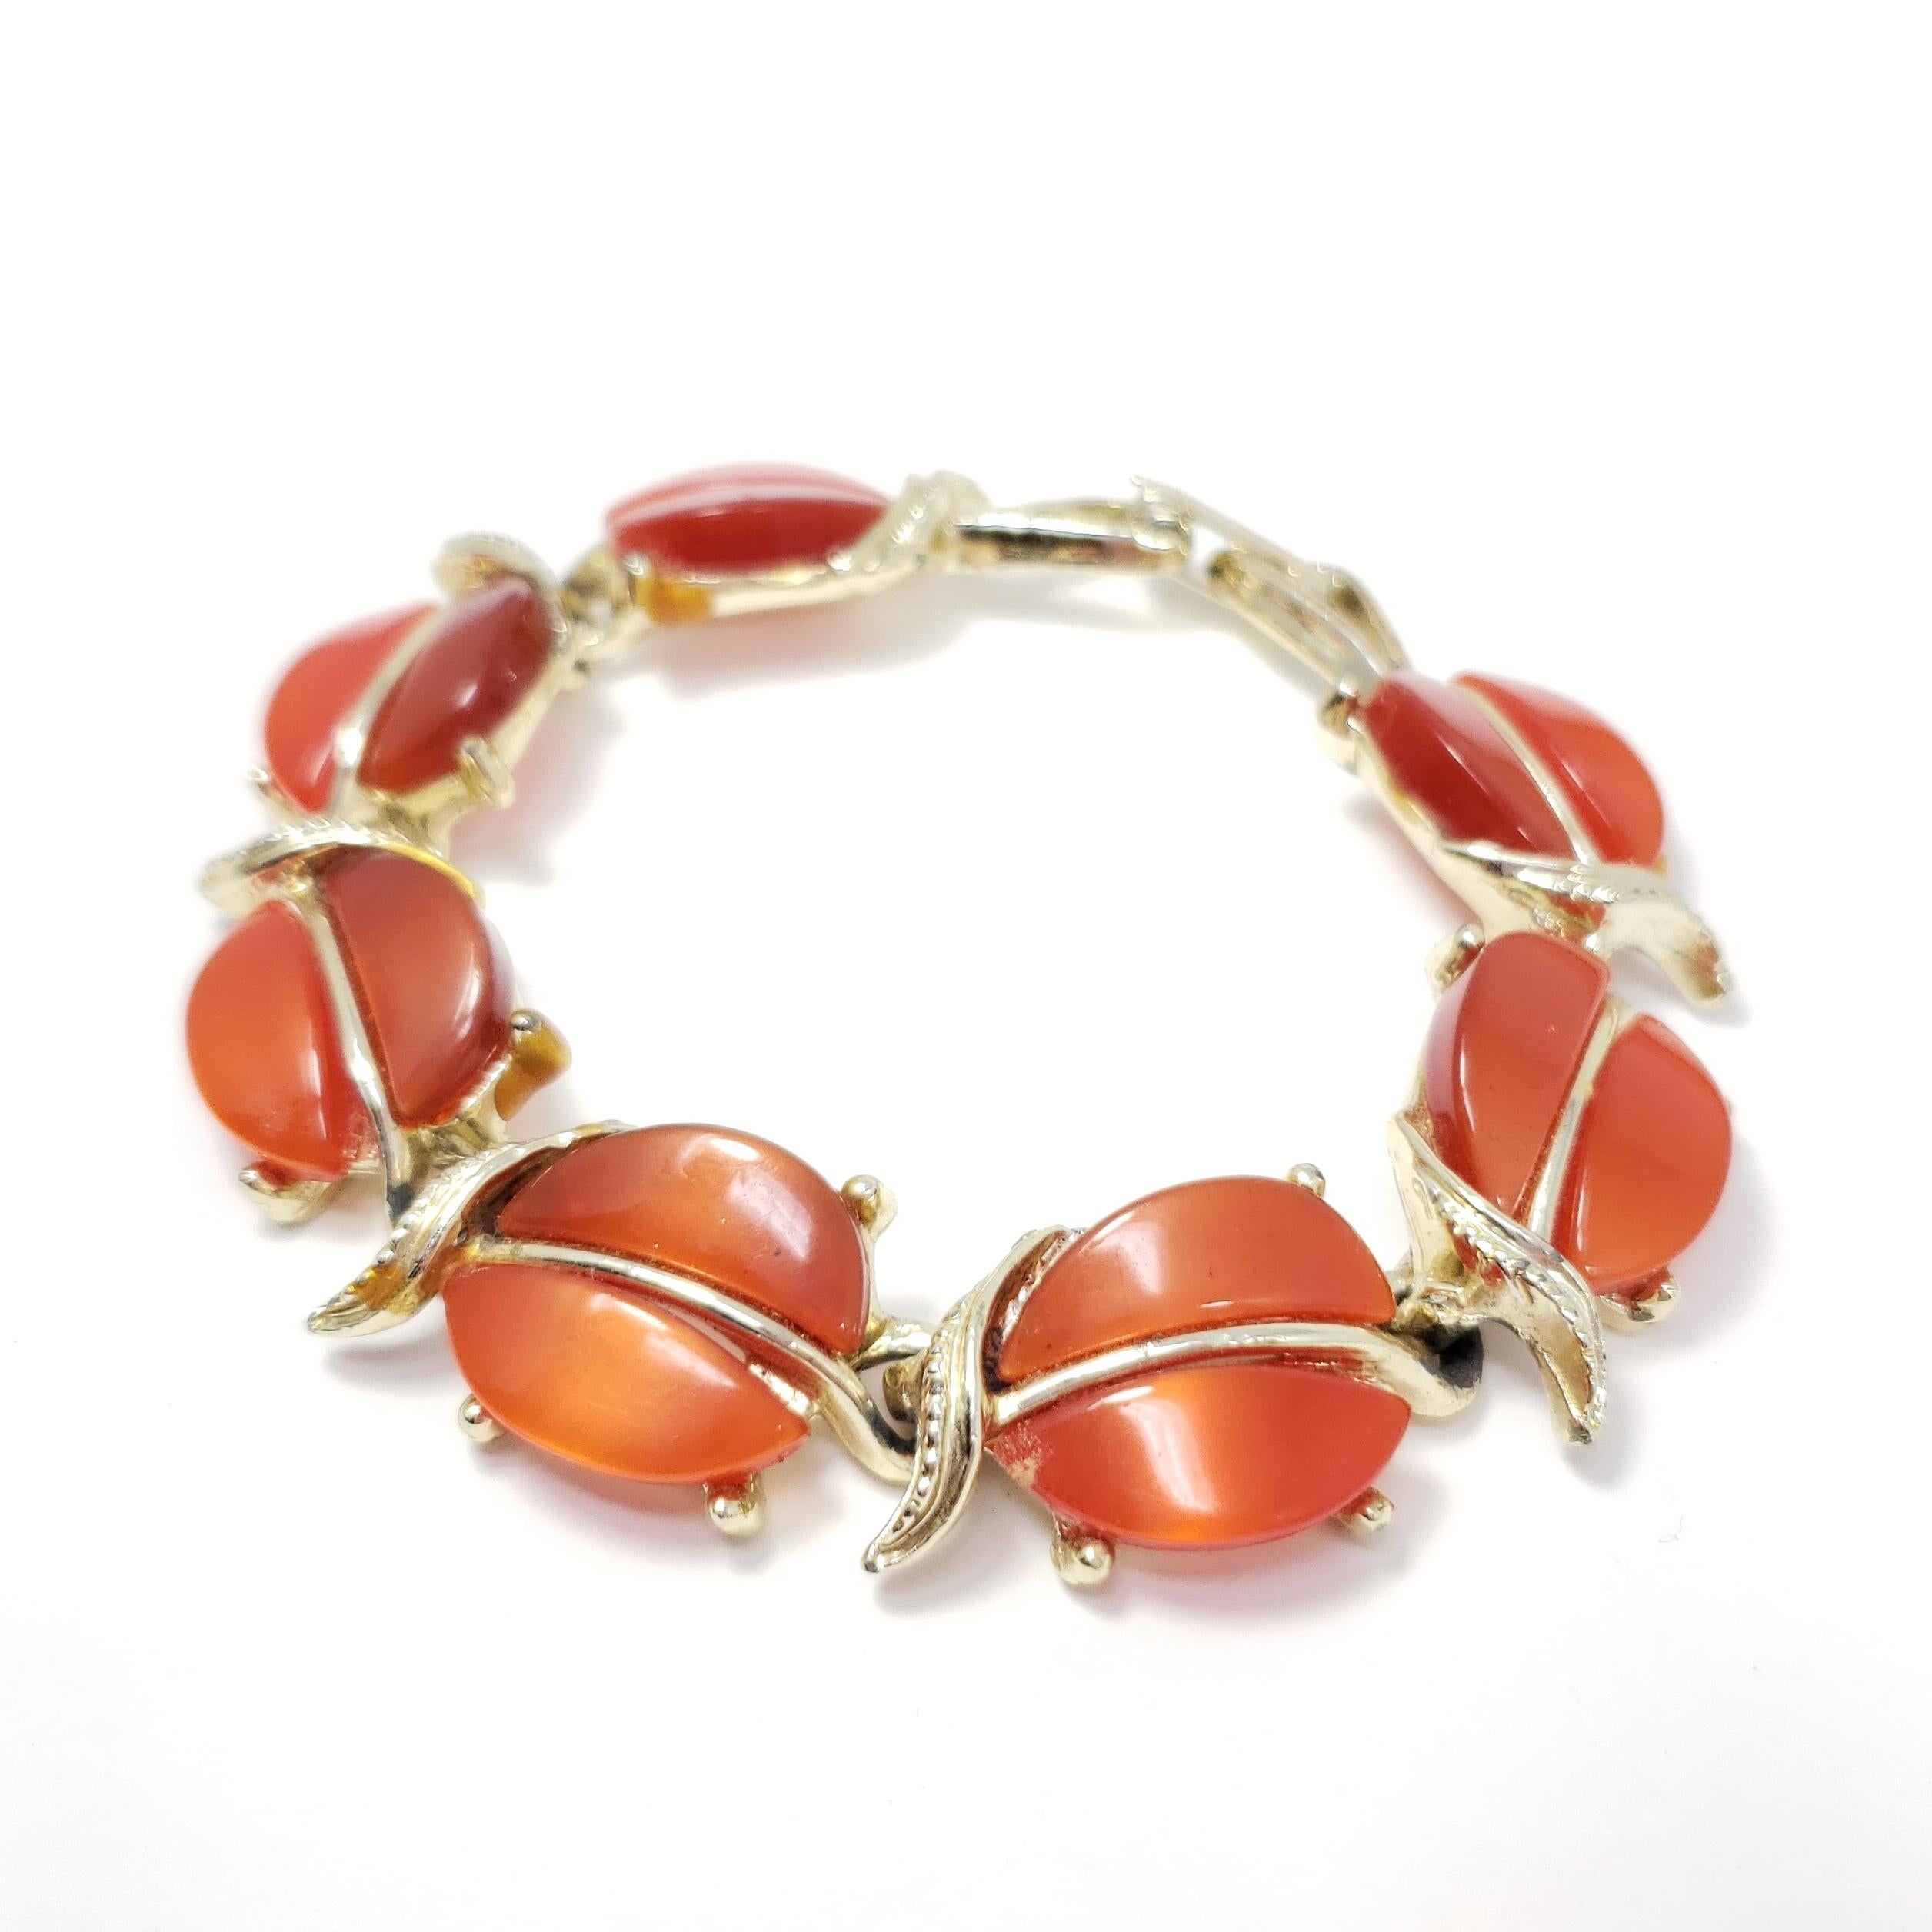 Un bracelet rétro extravagant avec des motifs de feuilles de couleur ambre, sertis dans des maillons en or.

Plaqué or. Fermeture à rabat.